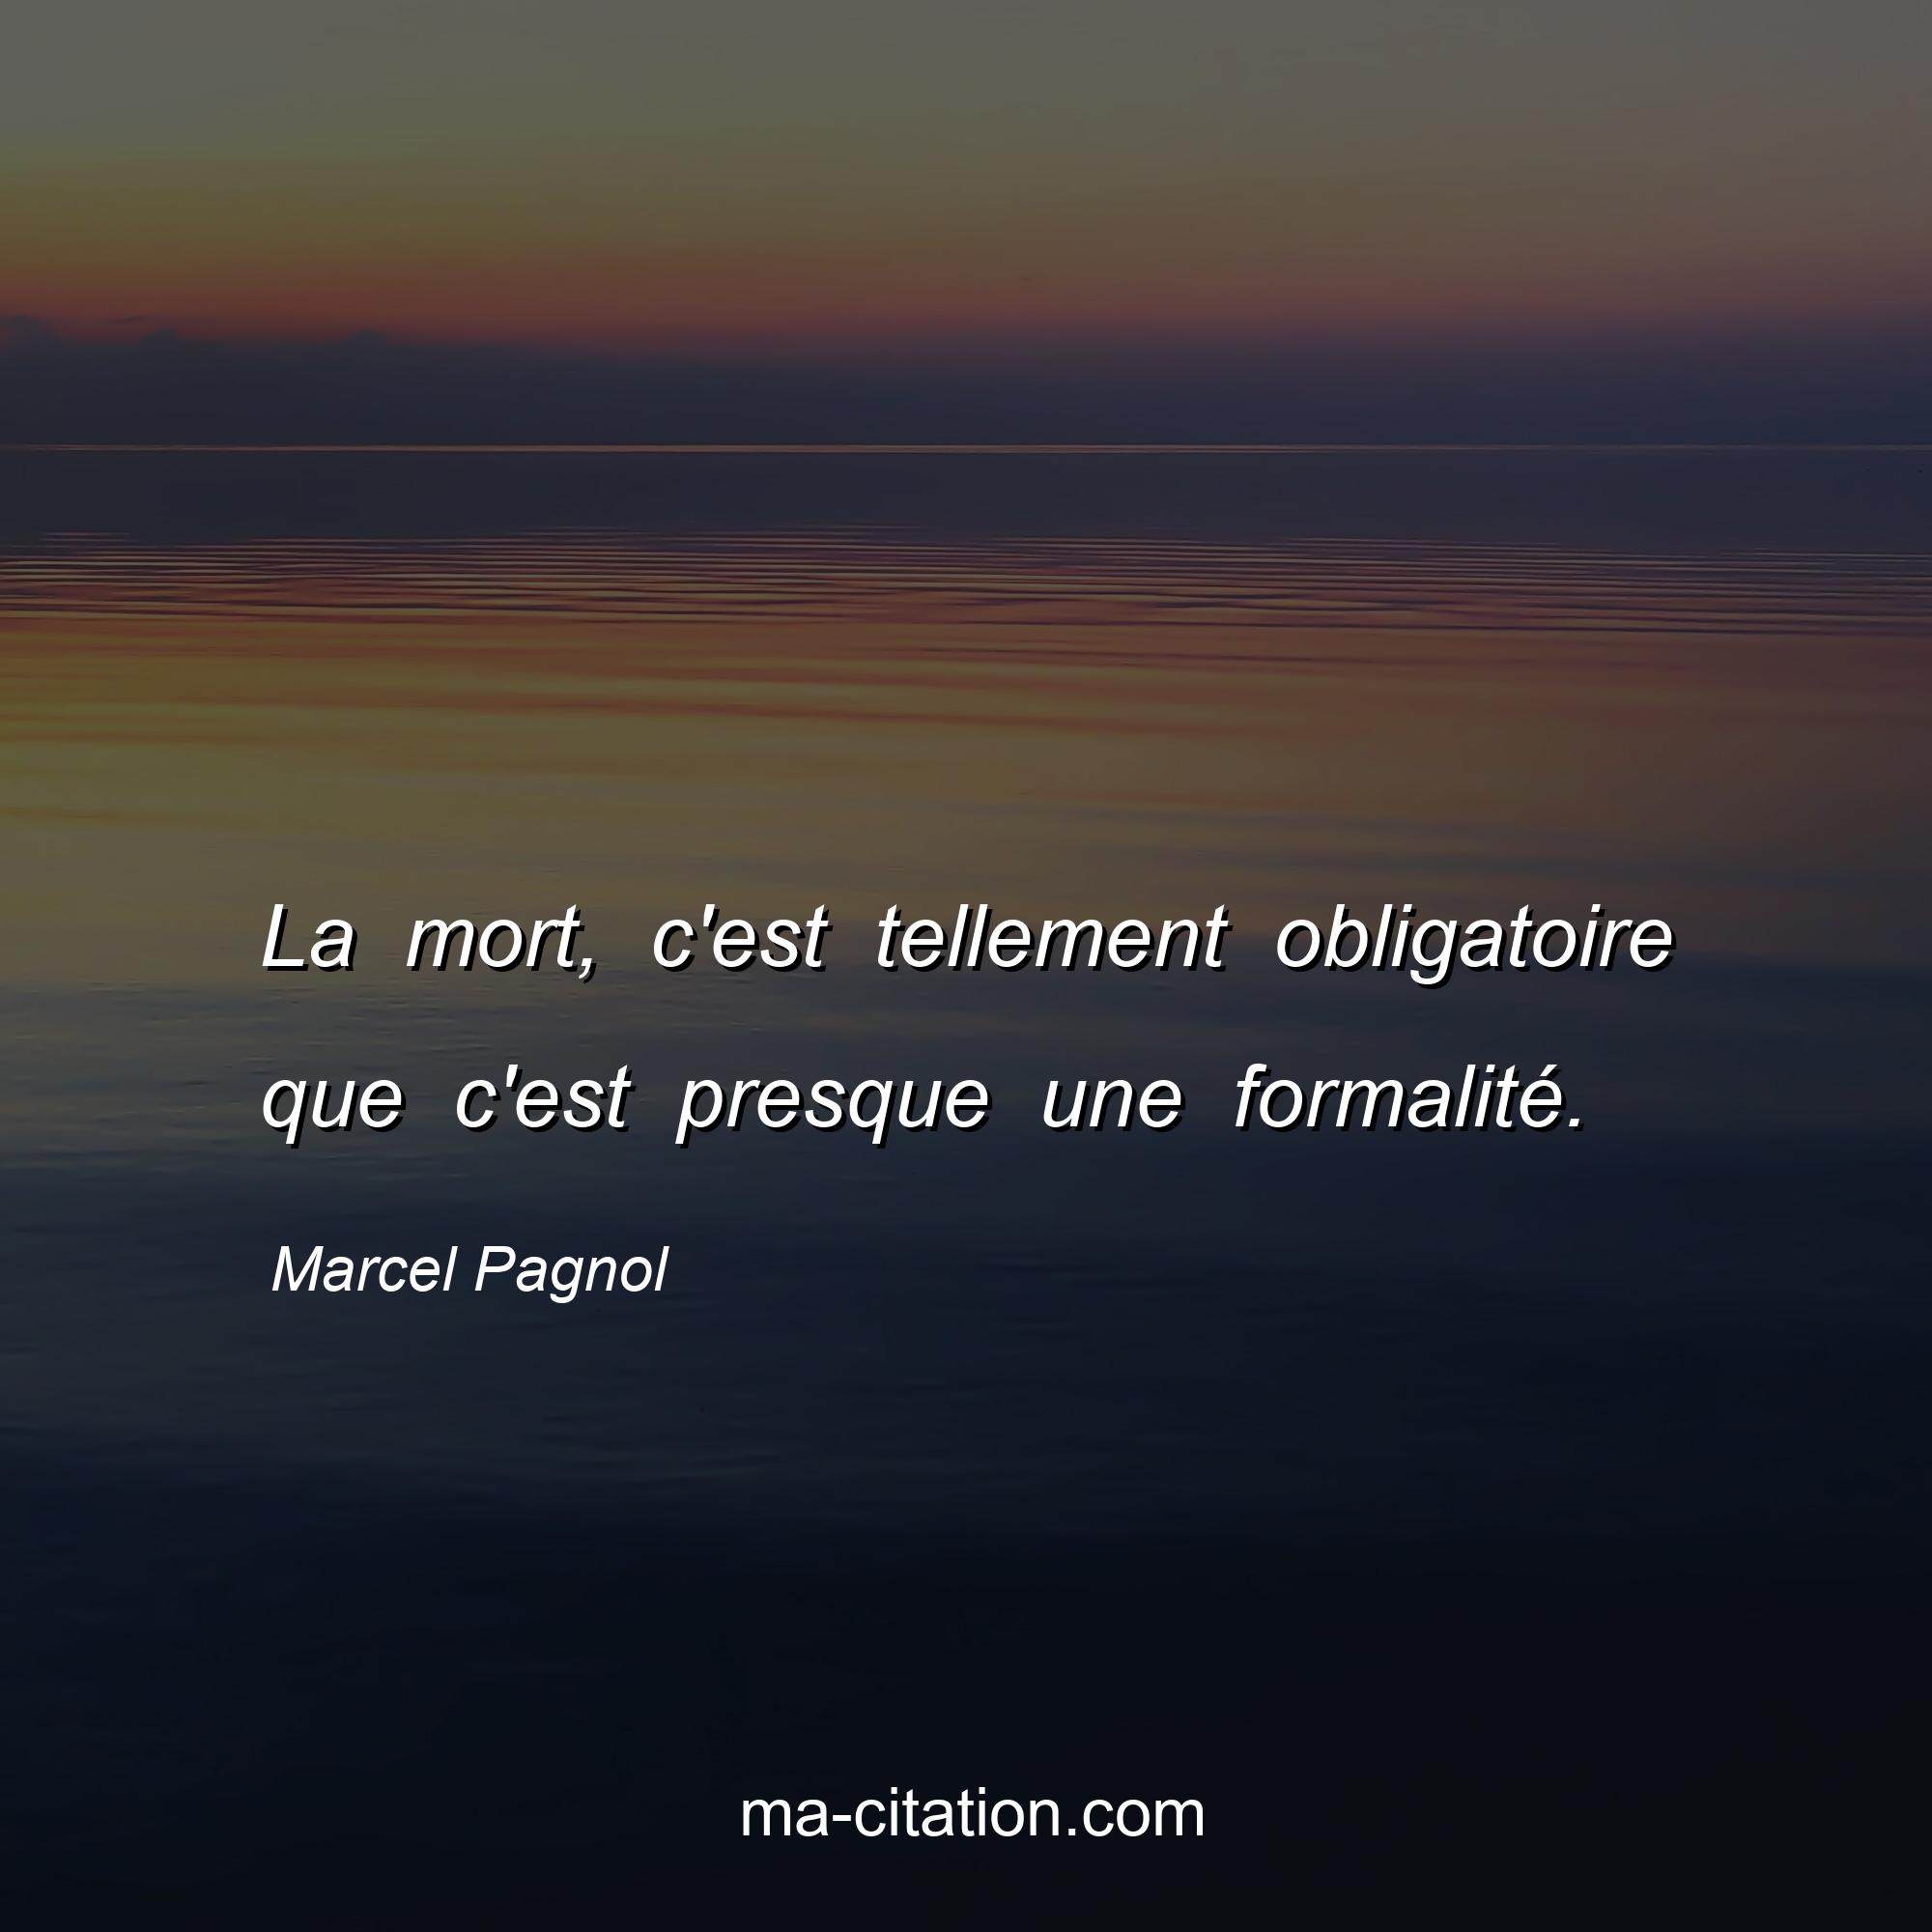 Marcel Pagnol : La mort, c'est tellement obligatoire que c'est presque une formalité.